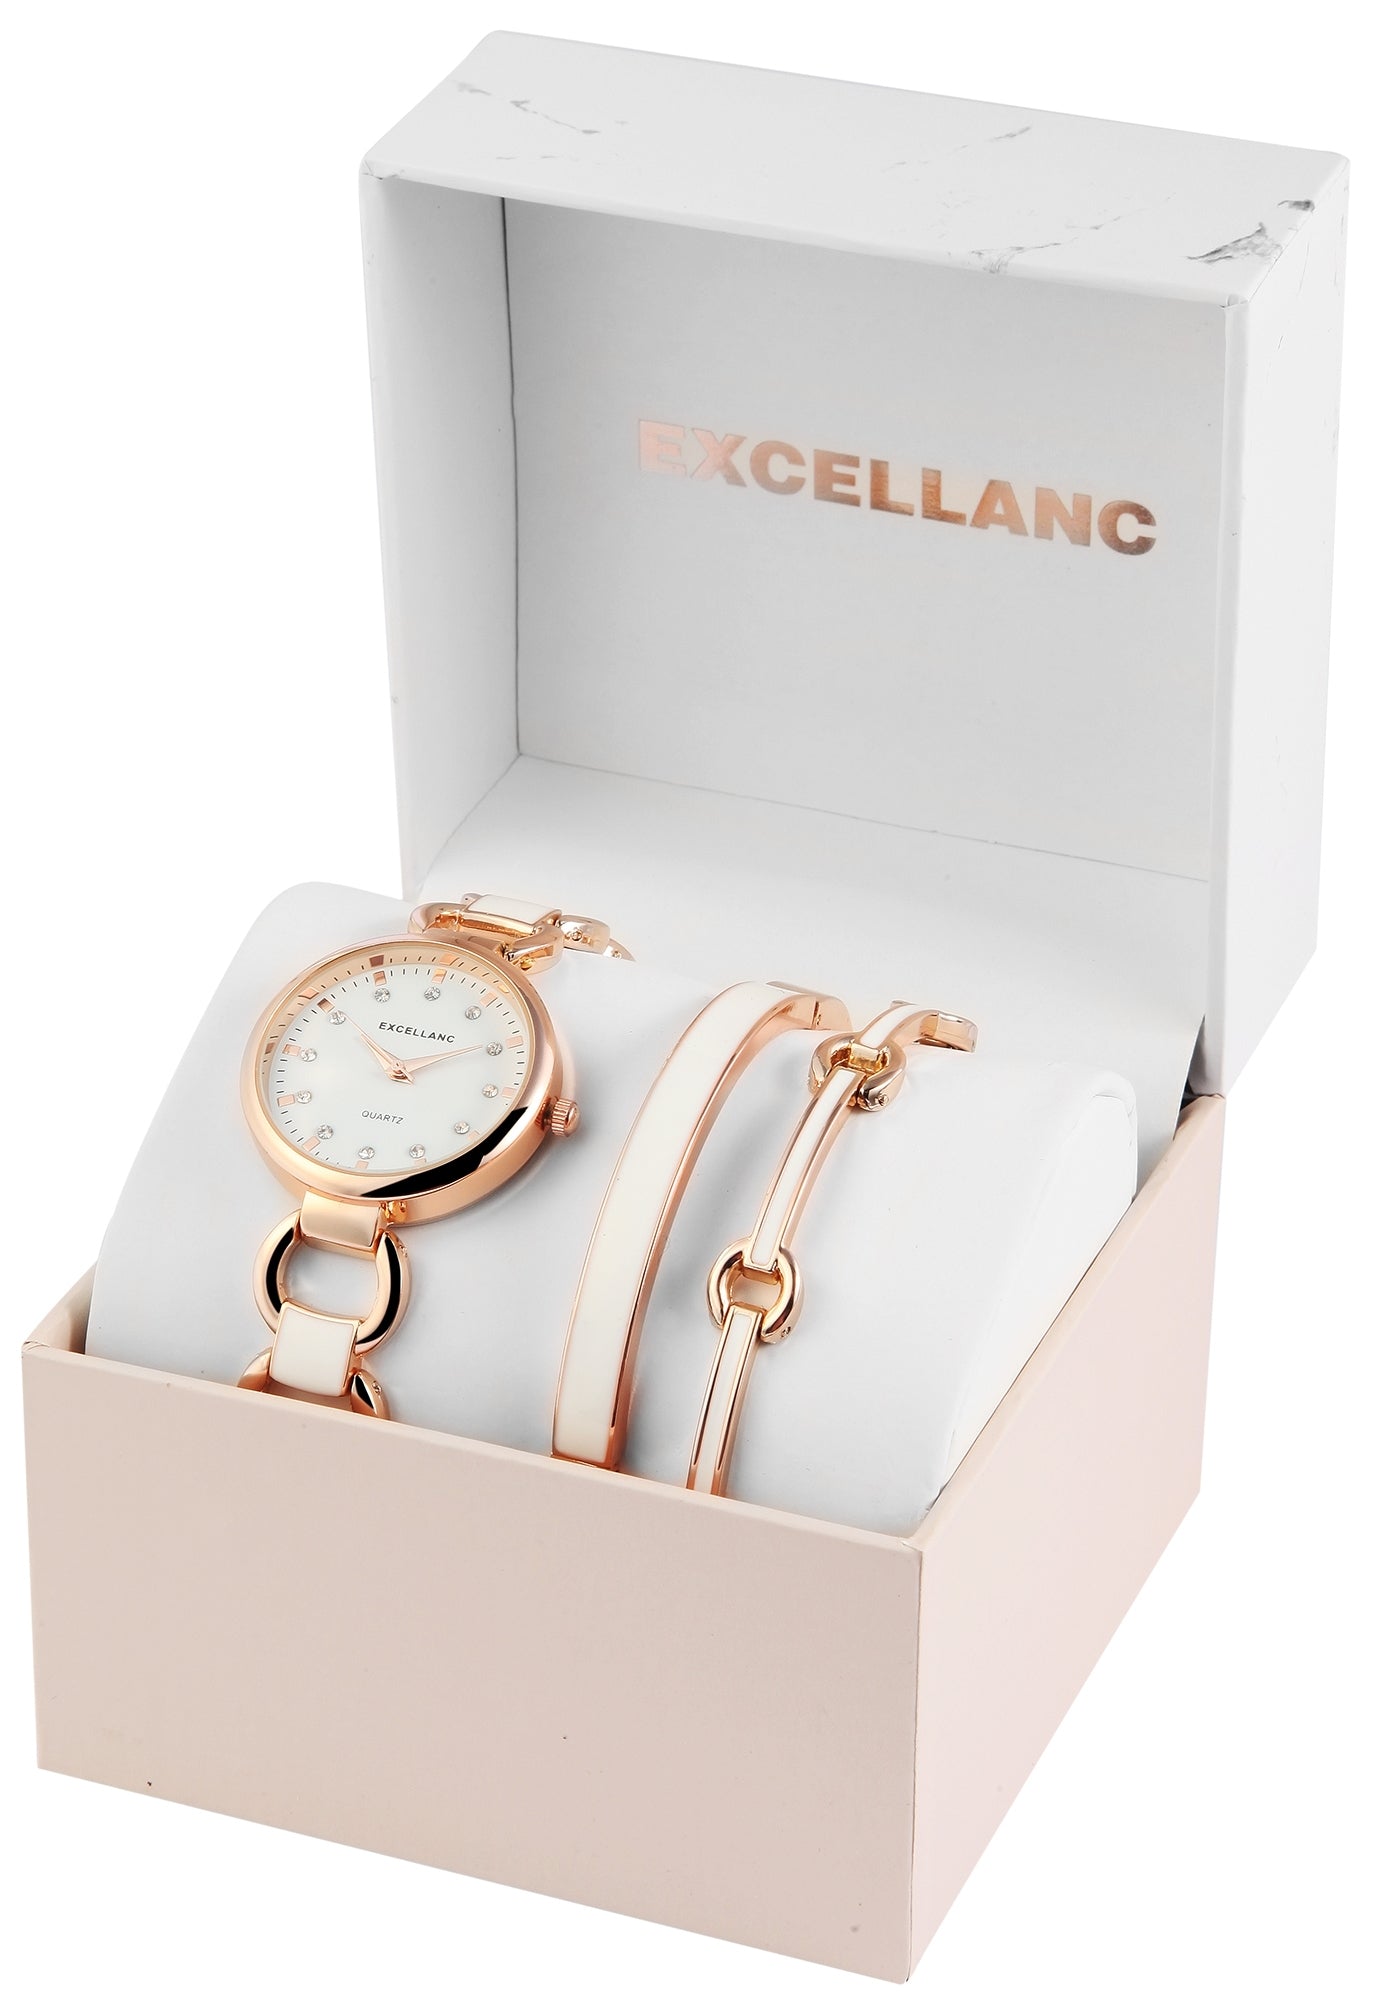 Excellanc dámské hodinky s 2 náramky EX0429, barva růžového zlata, vysoce kvalitní křemenný mechanismus, ciferník bílé barvy